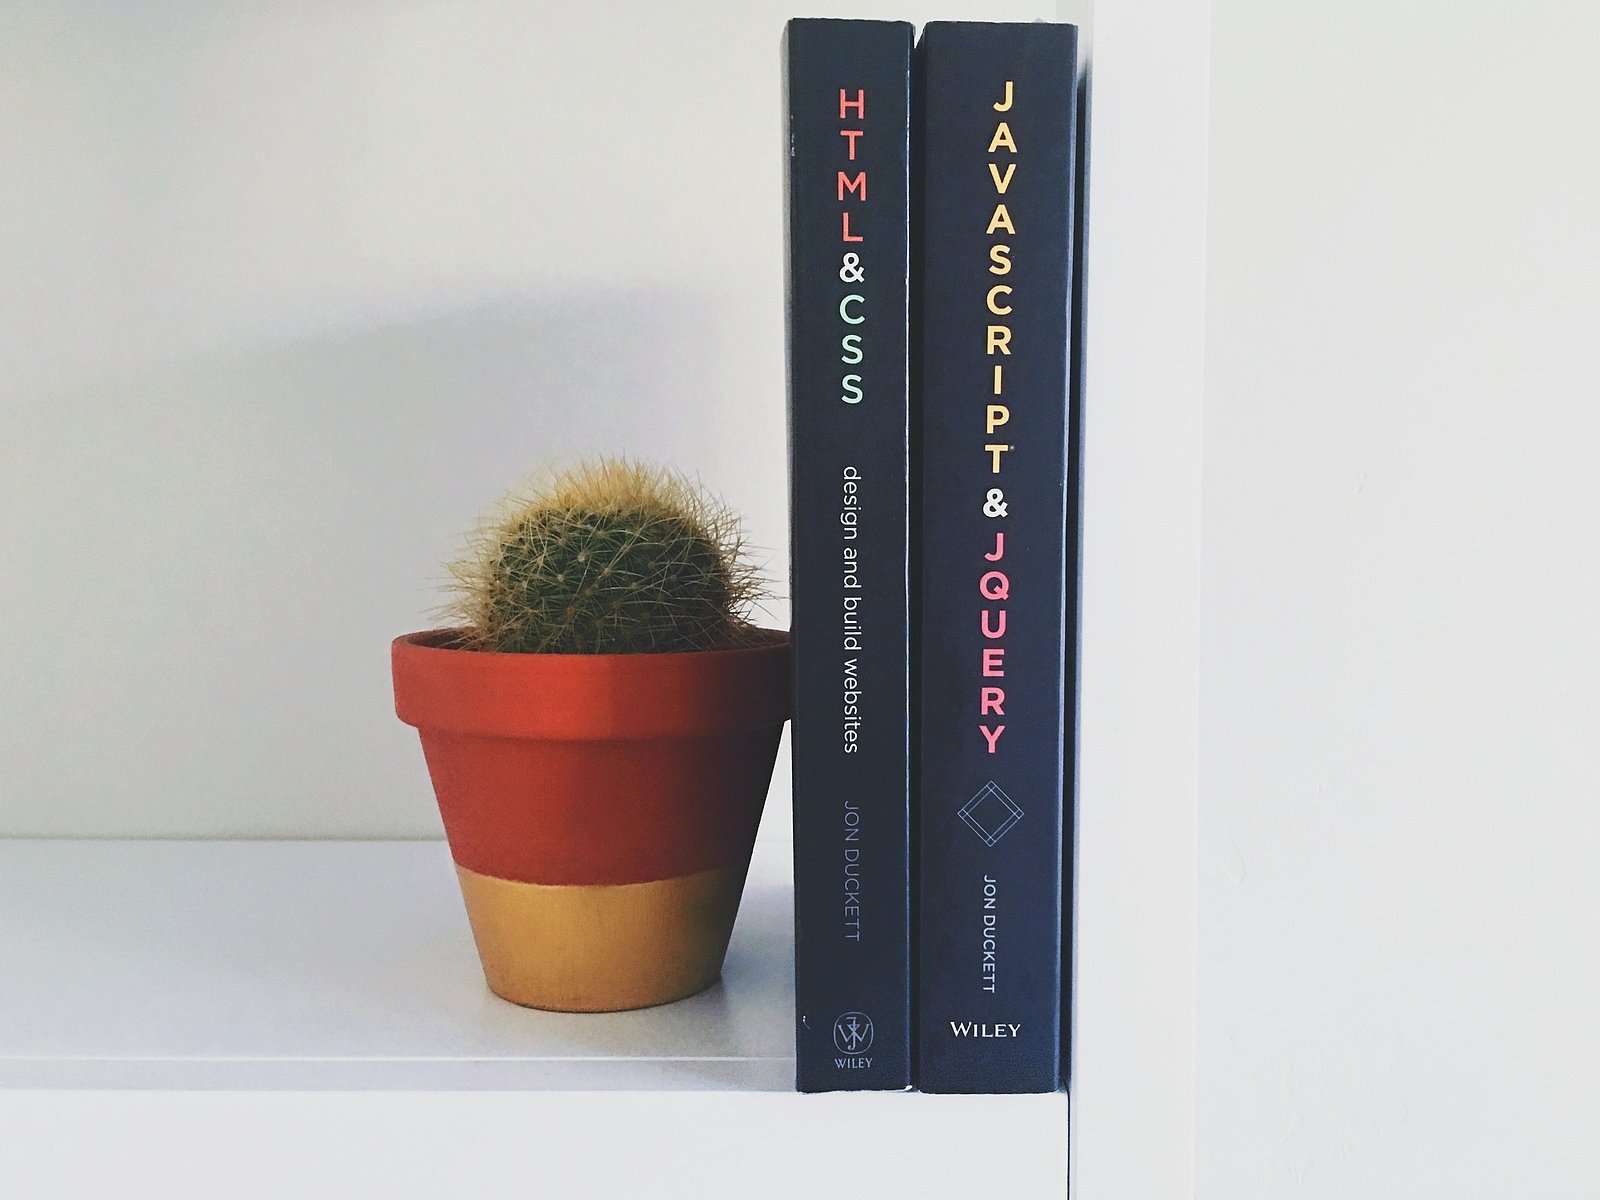 Bücher JavaScript, HTML, CSS und ein Kaktus